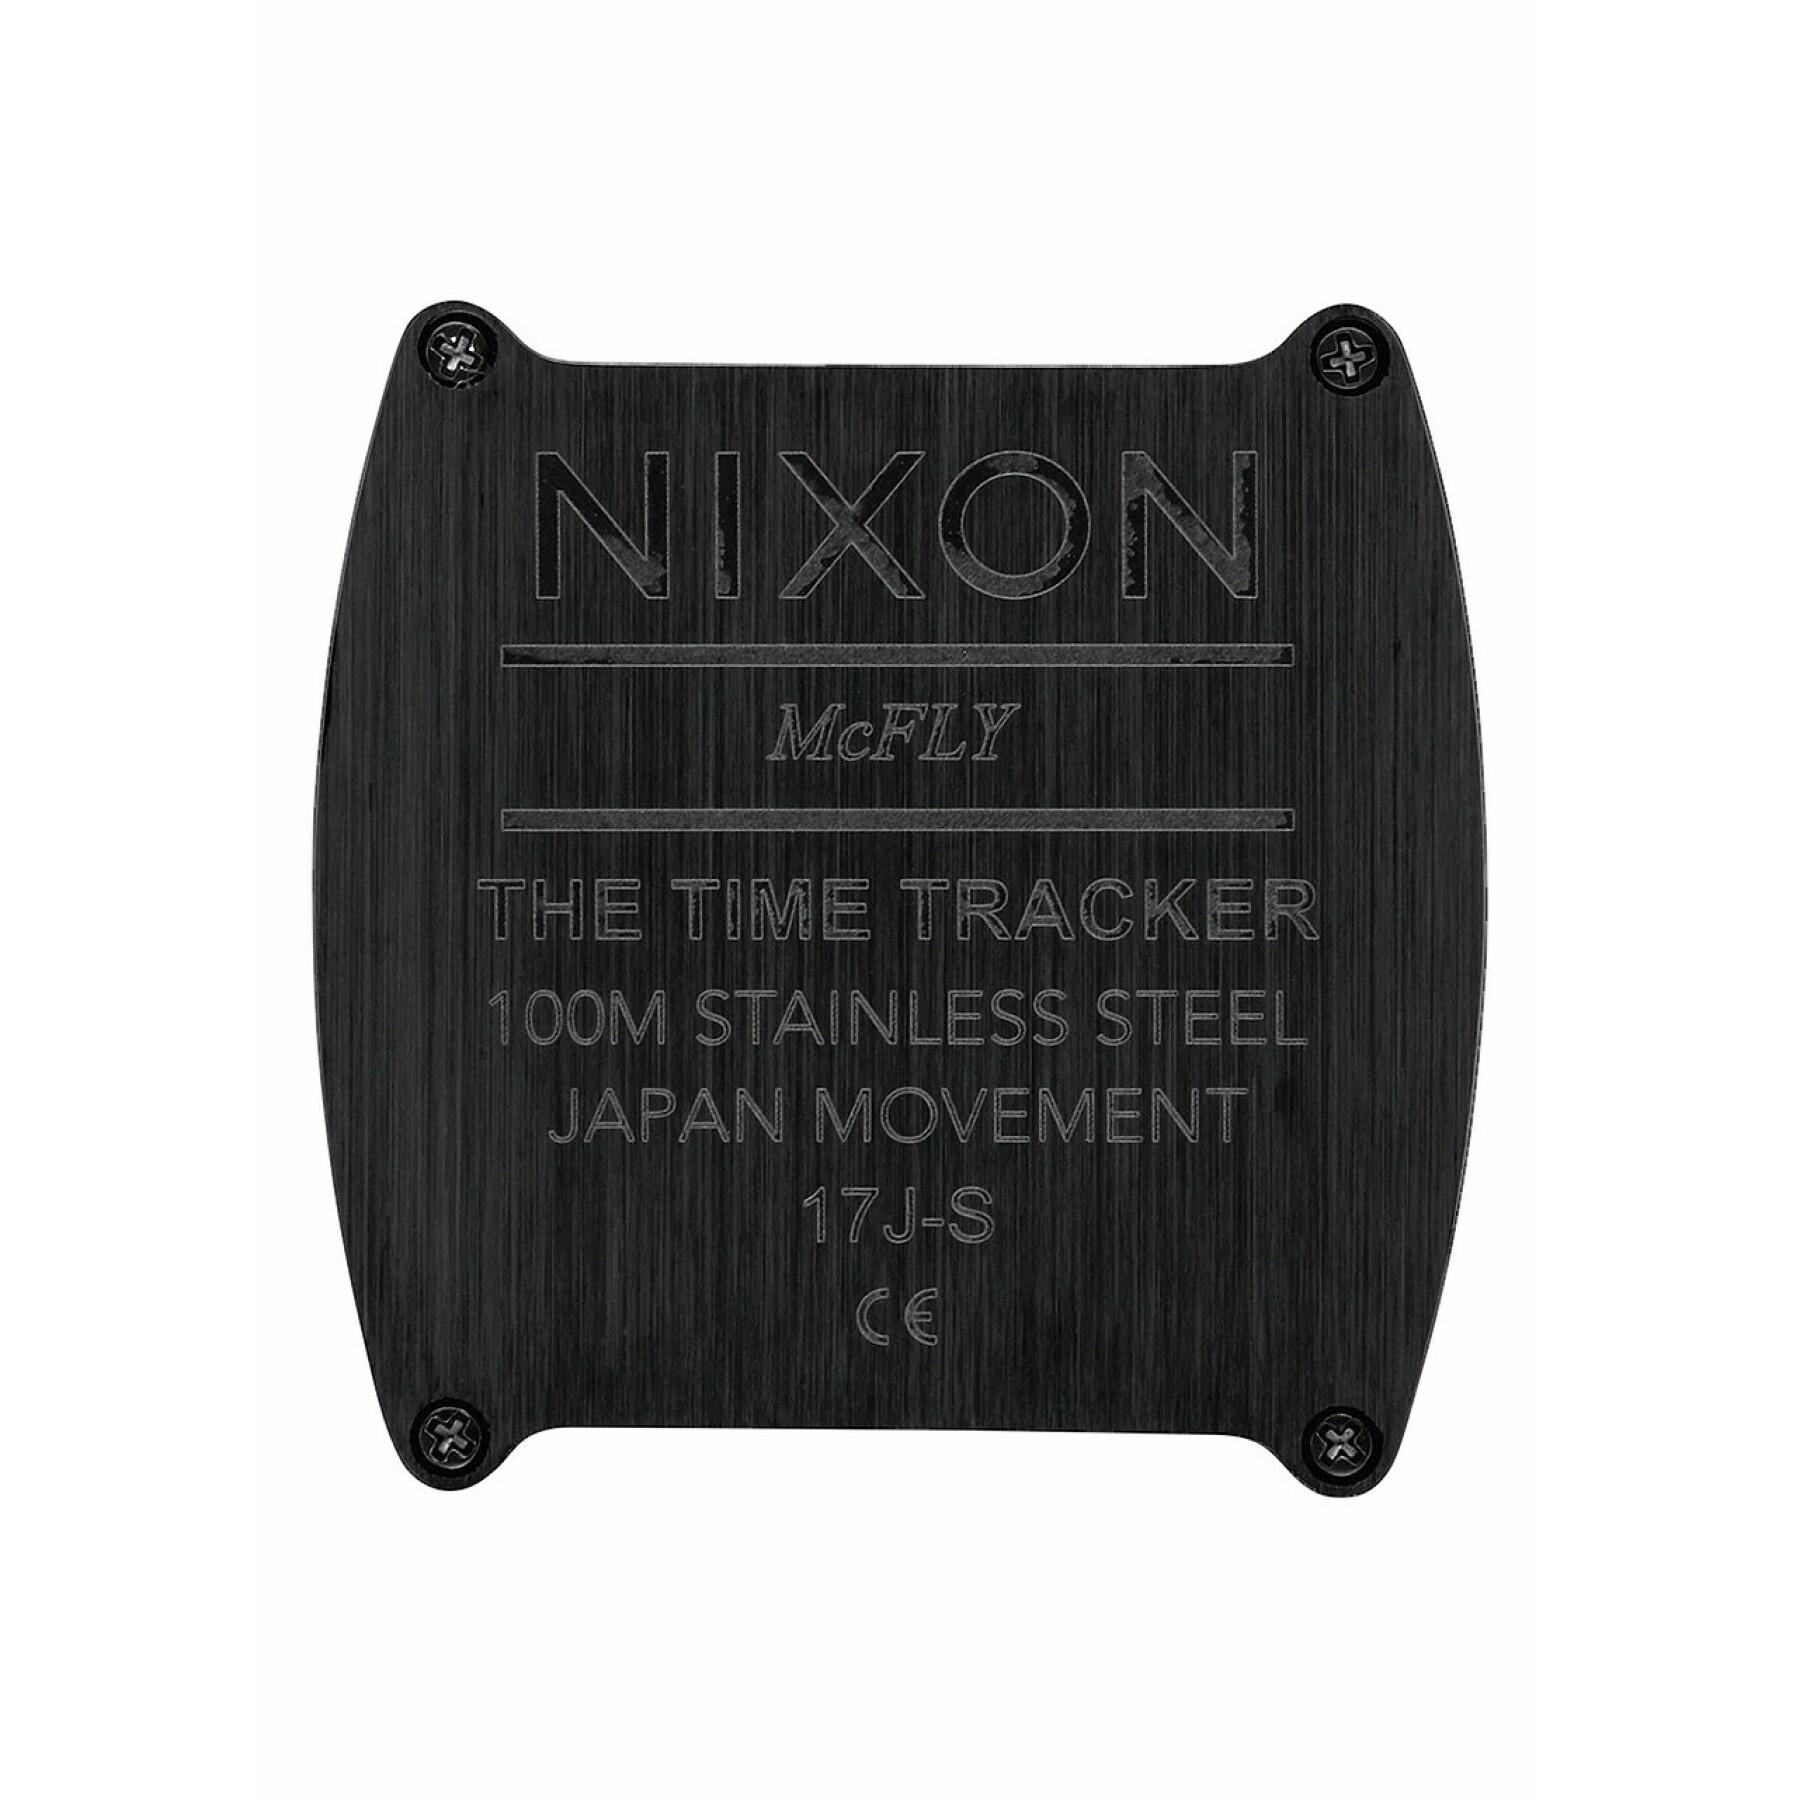 Ver Nixon Time Tracker